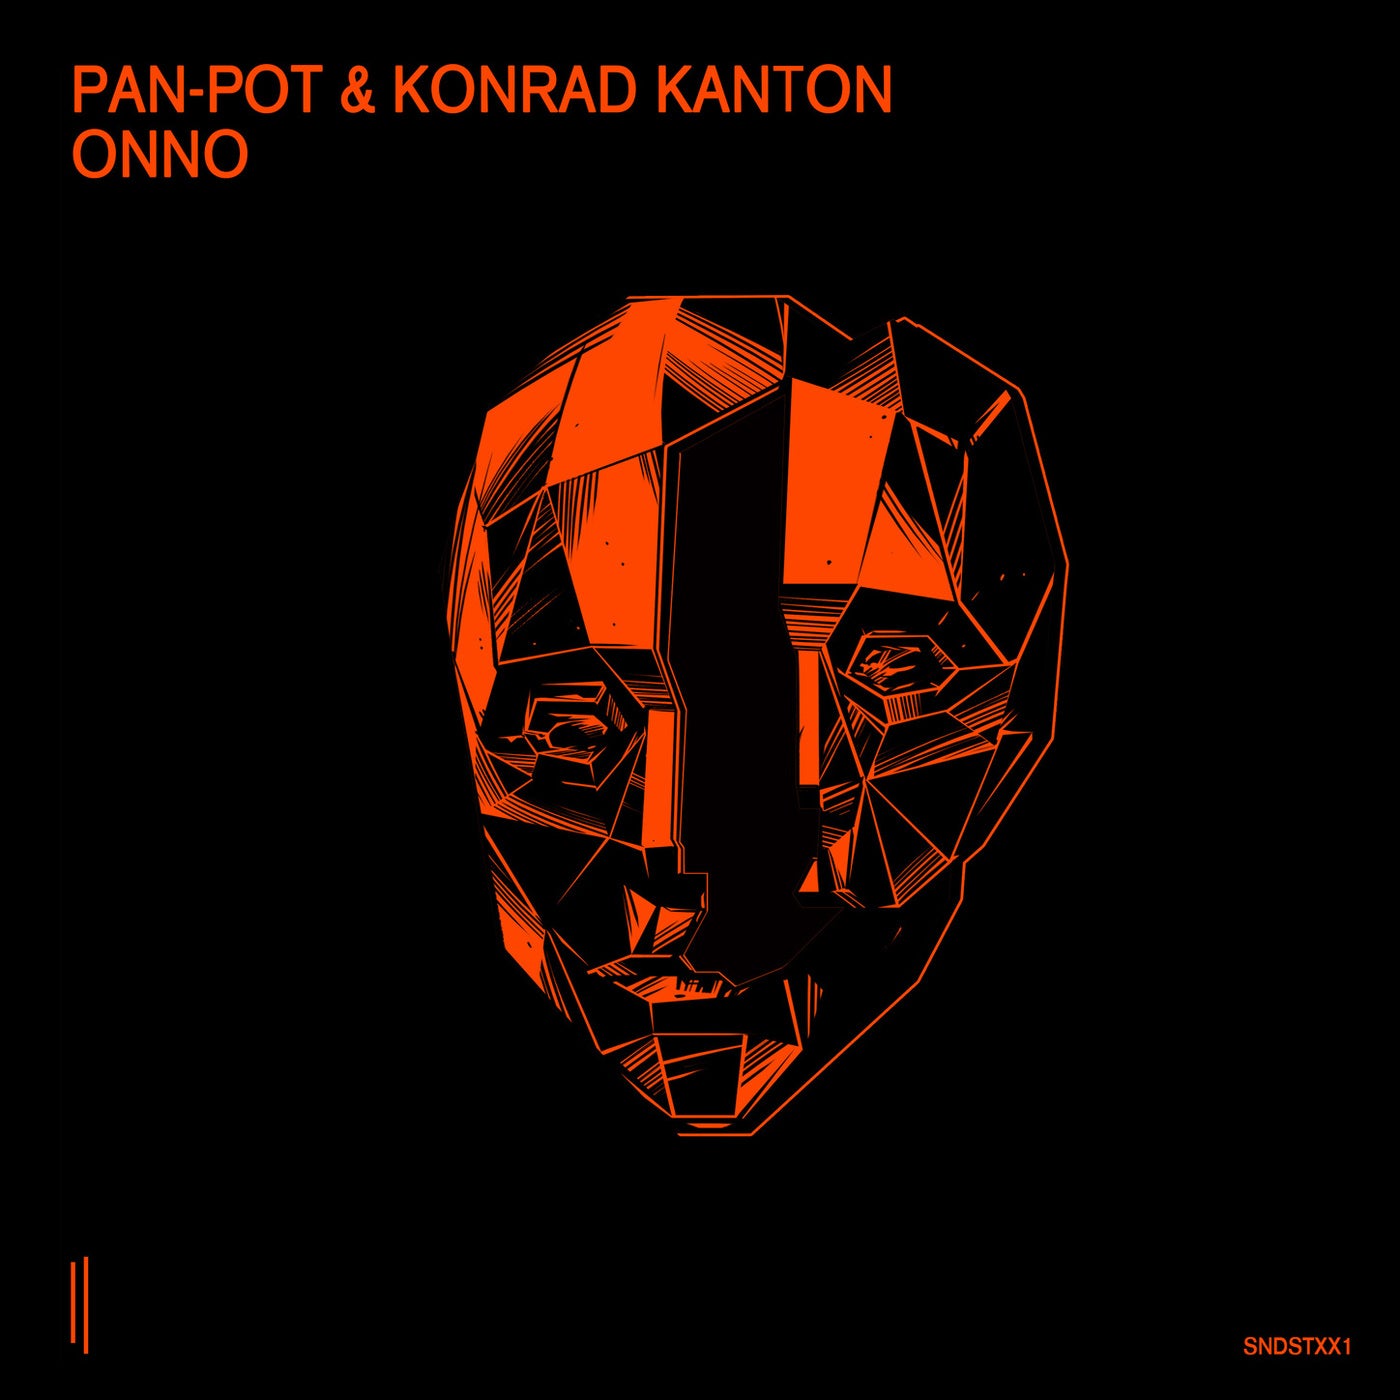 image cover: Pan-Pot & Konrad Kanton - Onno / SNDSTXX1